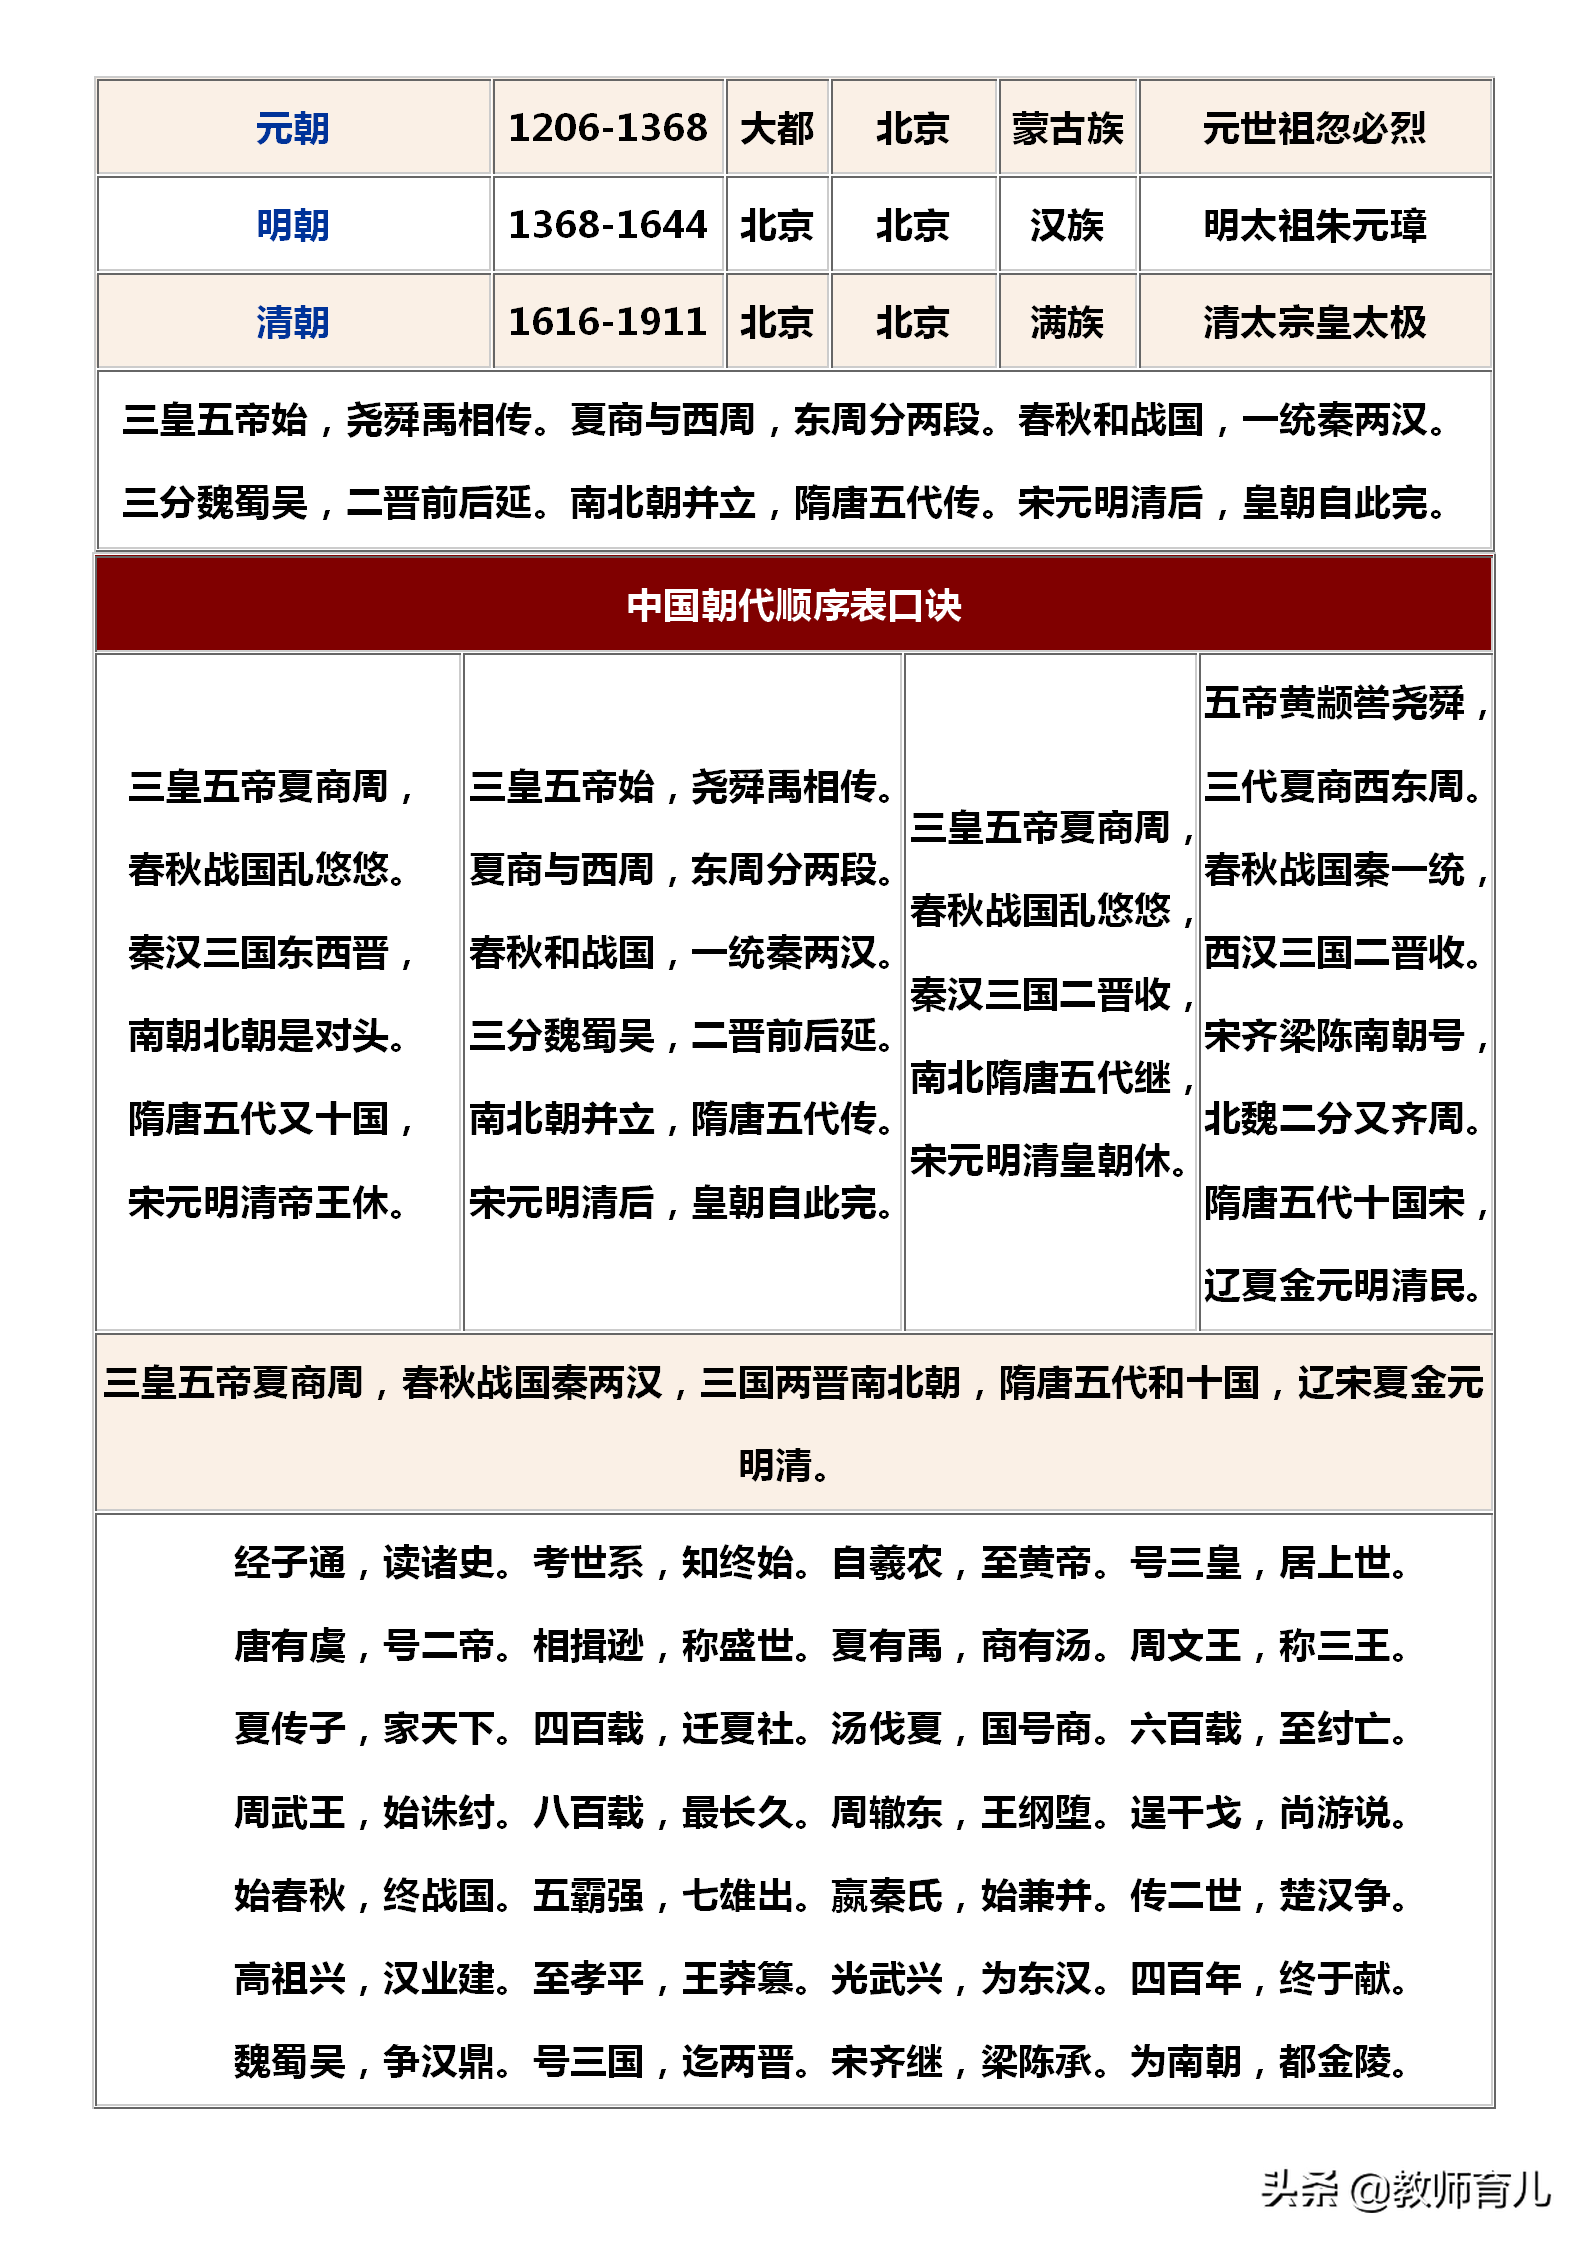 中国历史朝代顺序表背诵口诀中国历史朝代顺序表顺口溜